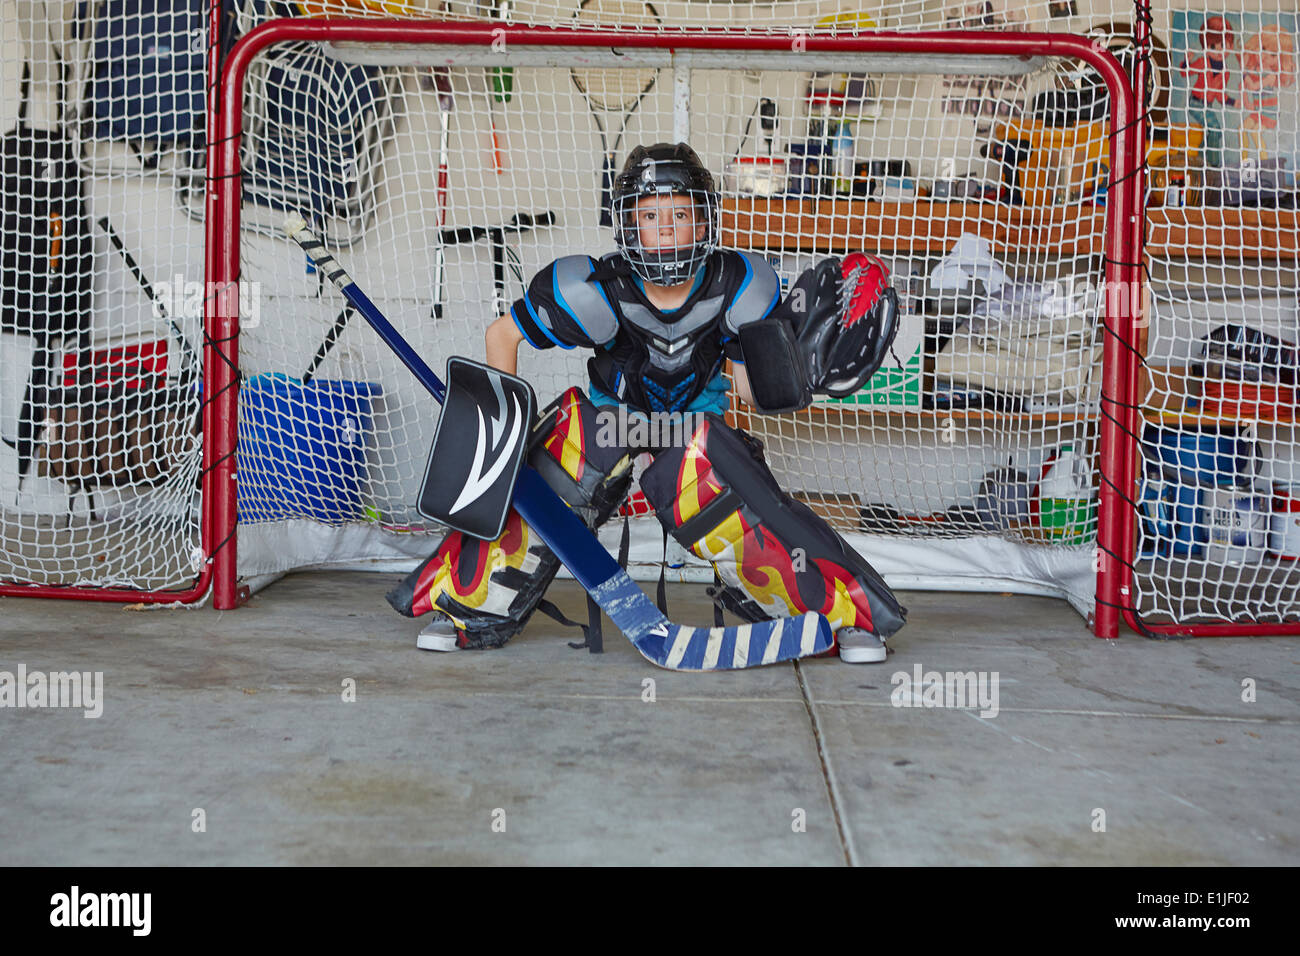 Junge im Hockey Tor tragen schützende Sportbekleidung Stockfoto